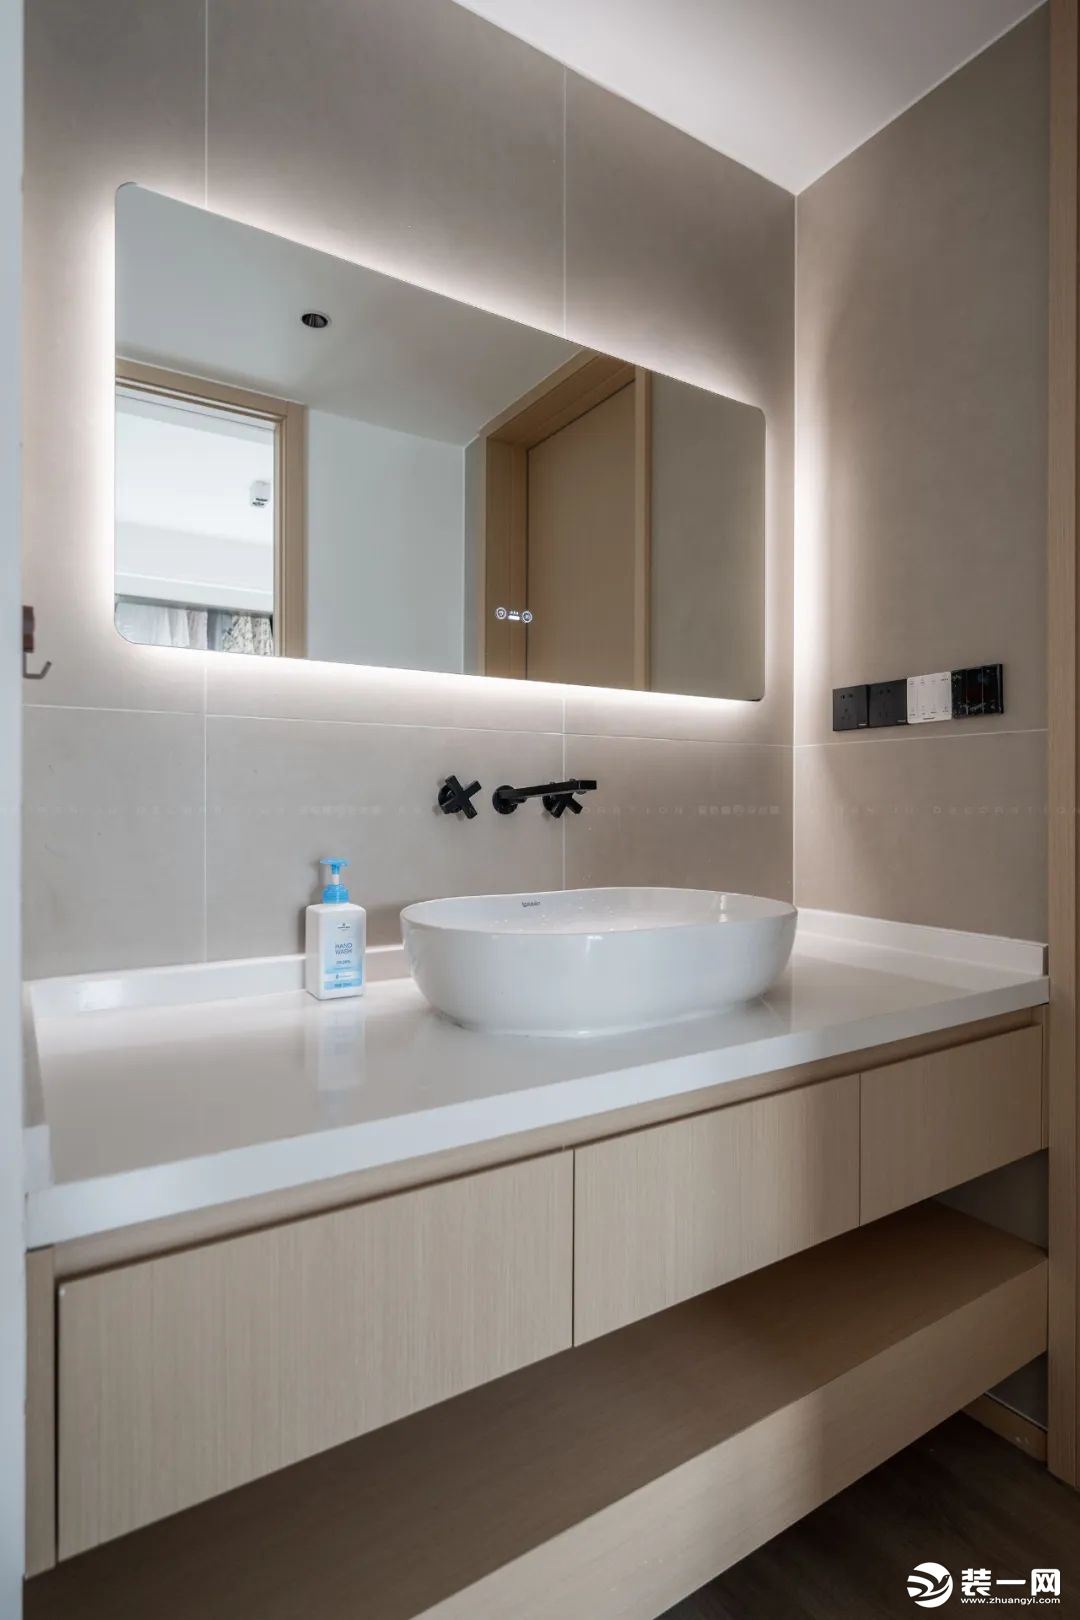 卫生间淋浴房做了下沉式处理，单扇玻璃固定，不做推拉门，倒显得空间尤为宽敞，米灰色瓷砖的质感又增加几分